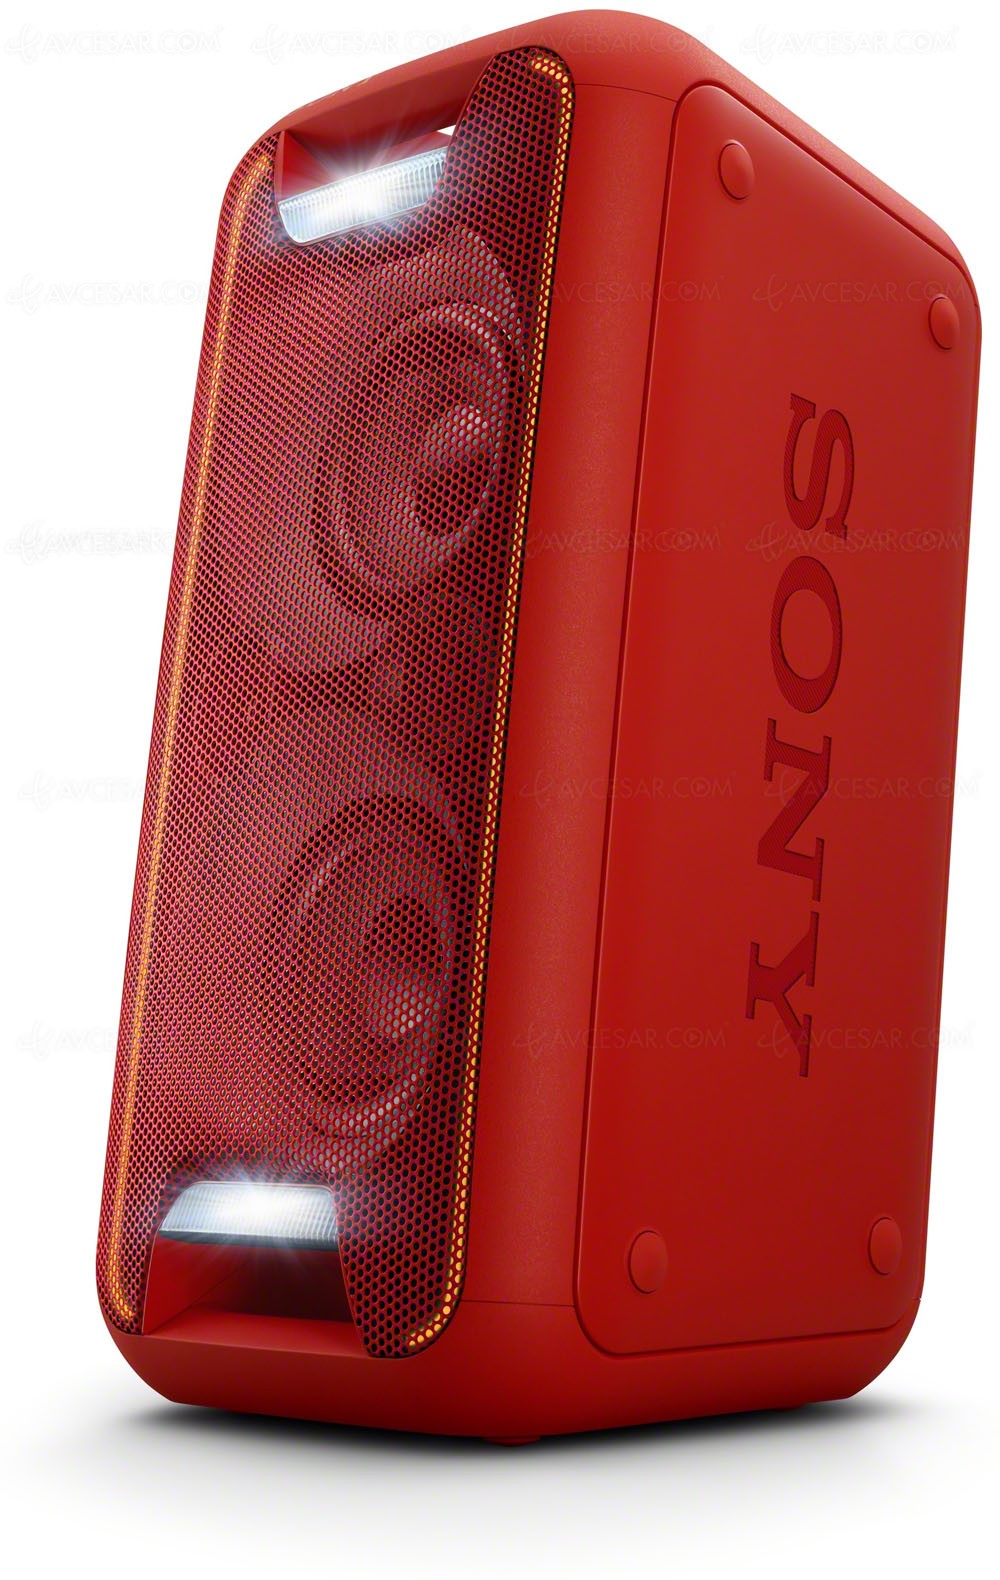 Soldes d'hiver : l'enceinte Bluetooth Sony GTK-XB5 à 122 euros